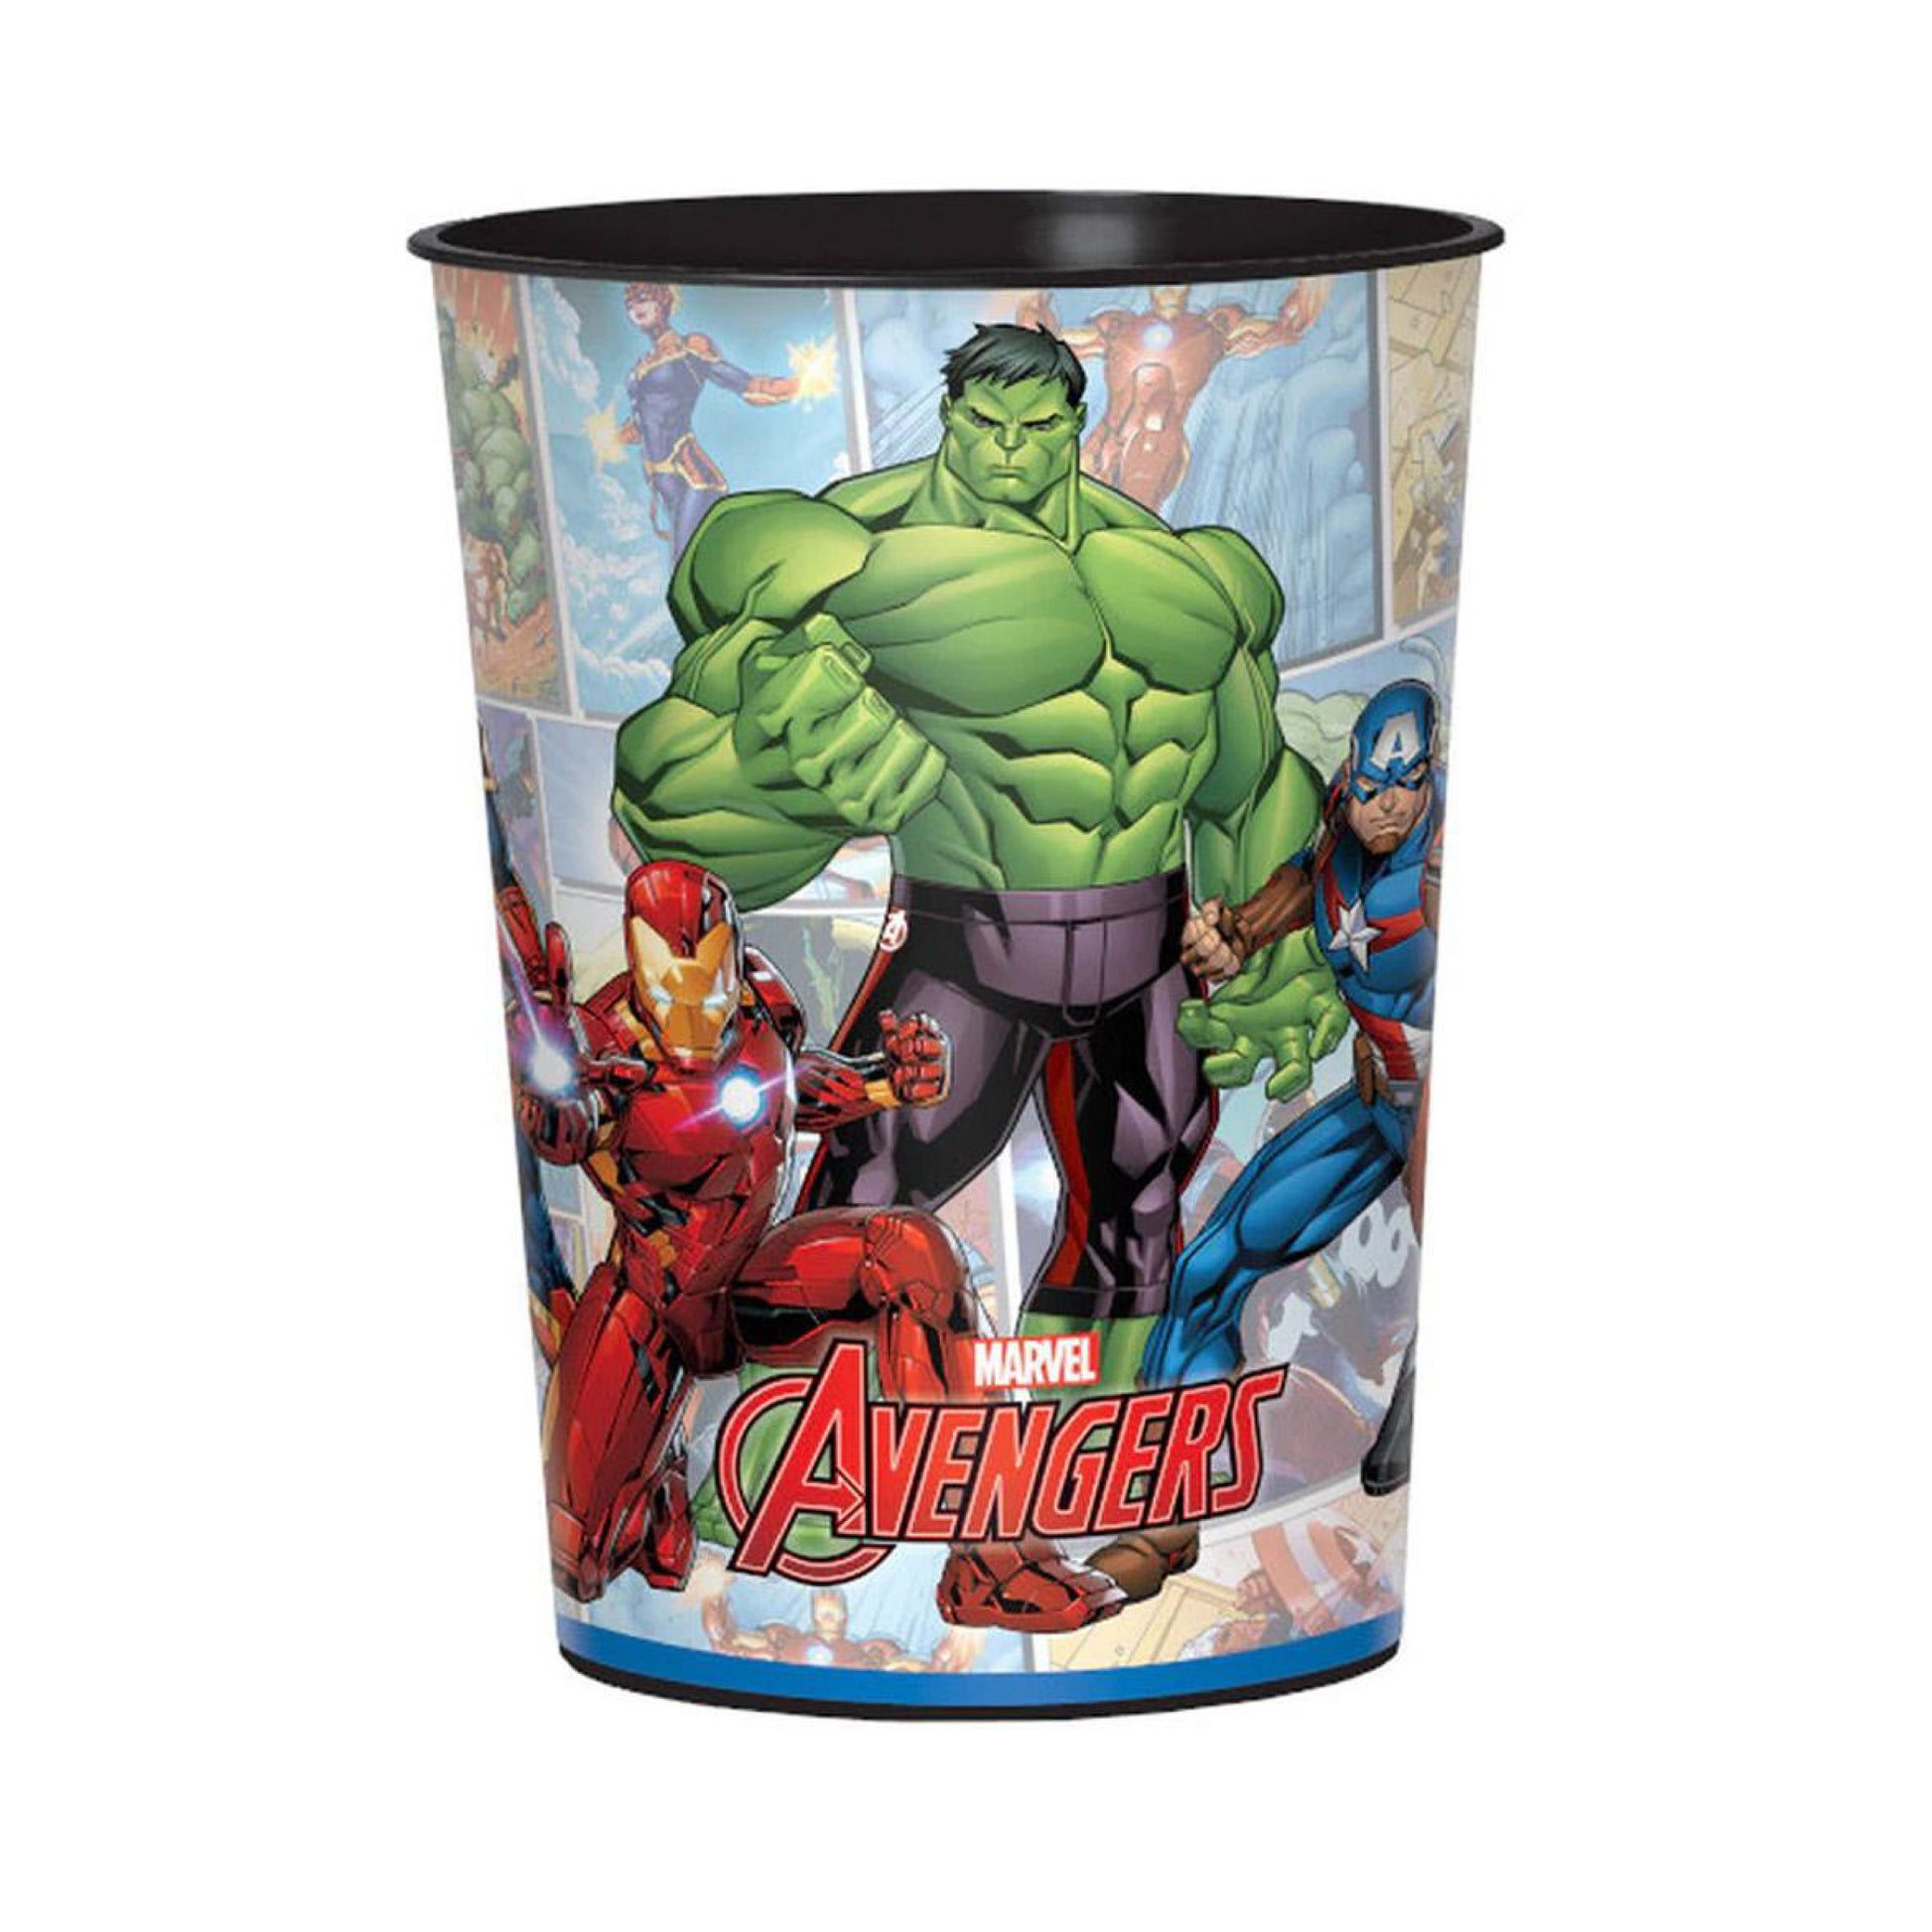 16 oz Avengers Plastic Favor Cup